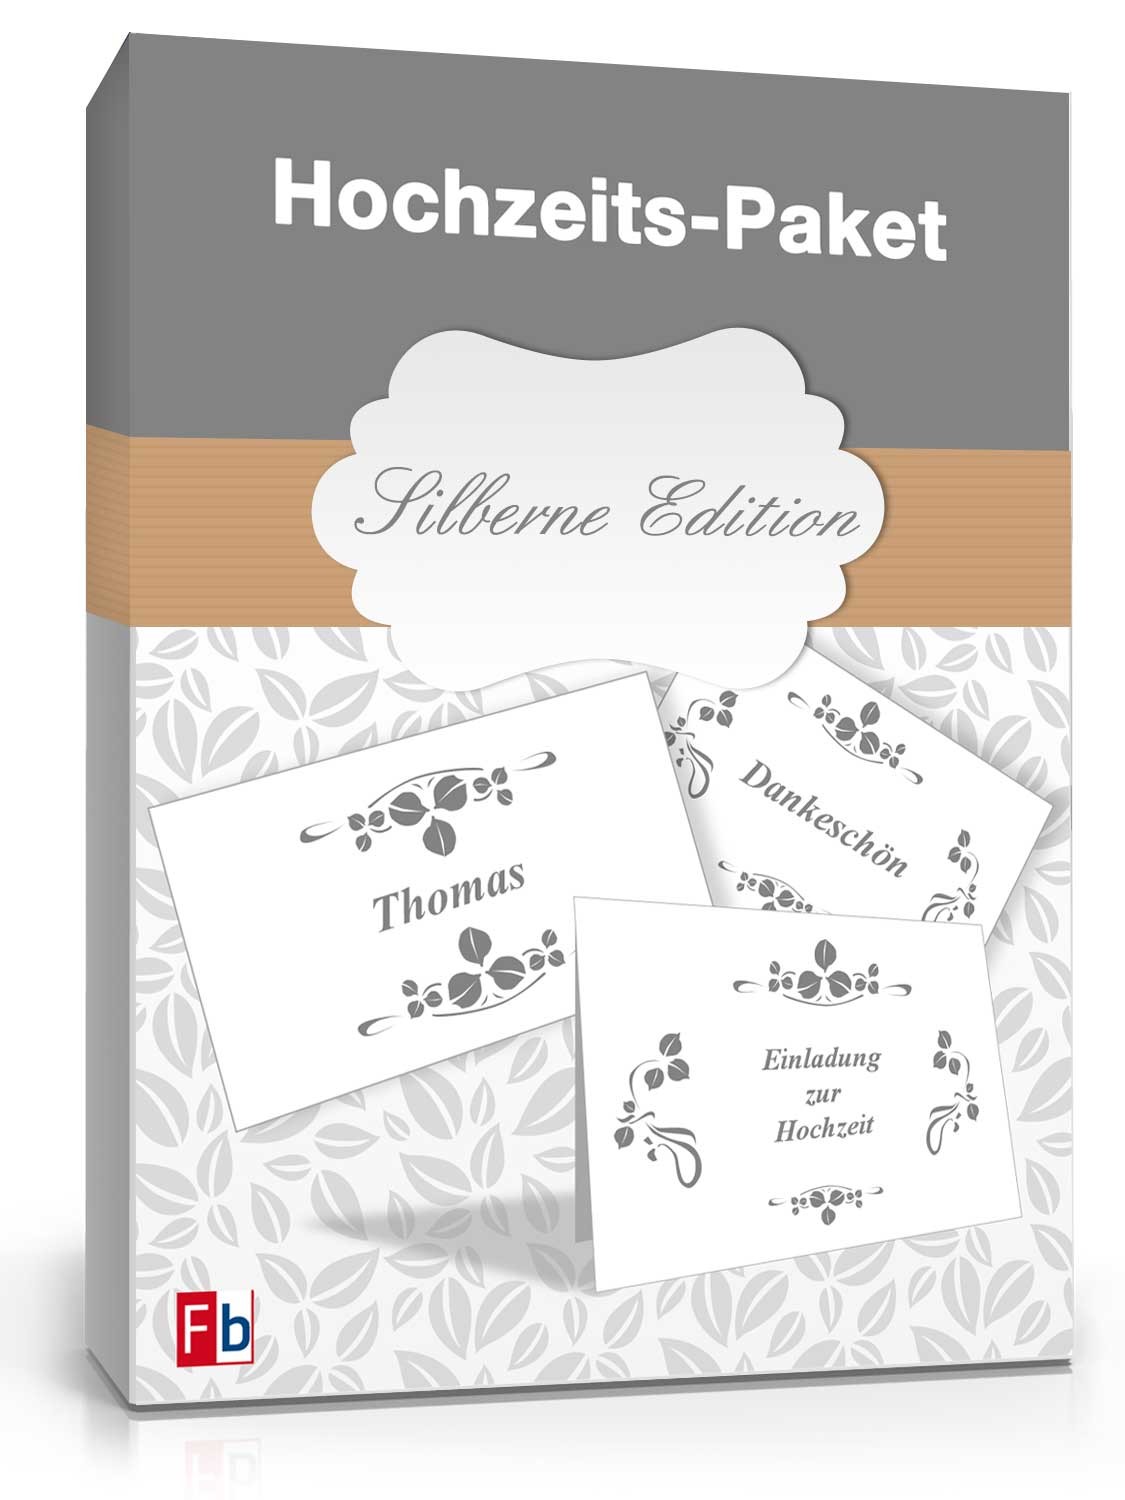 Hauptbild des Produkts: Hochzeits-Paket (Silberne Edition)